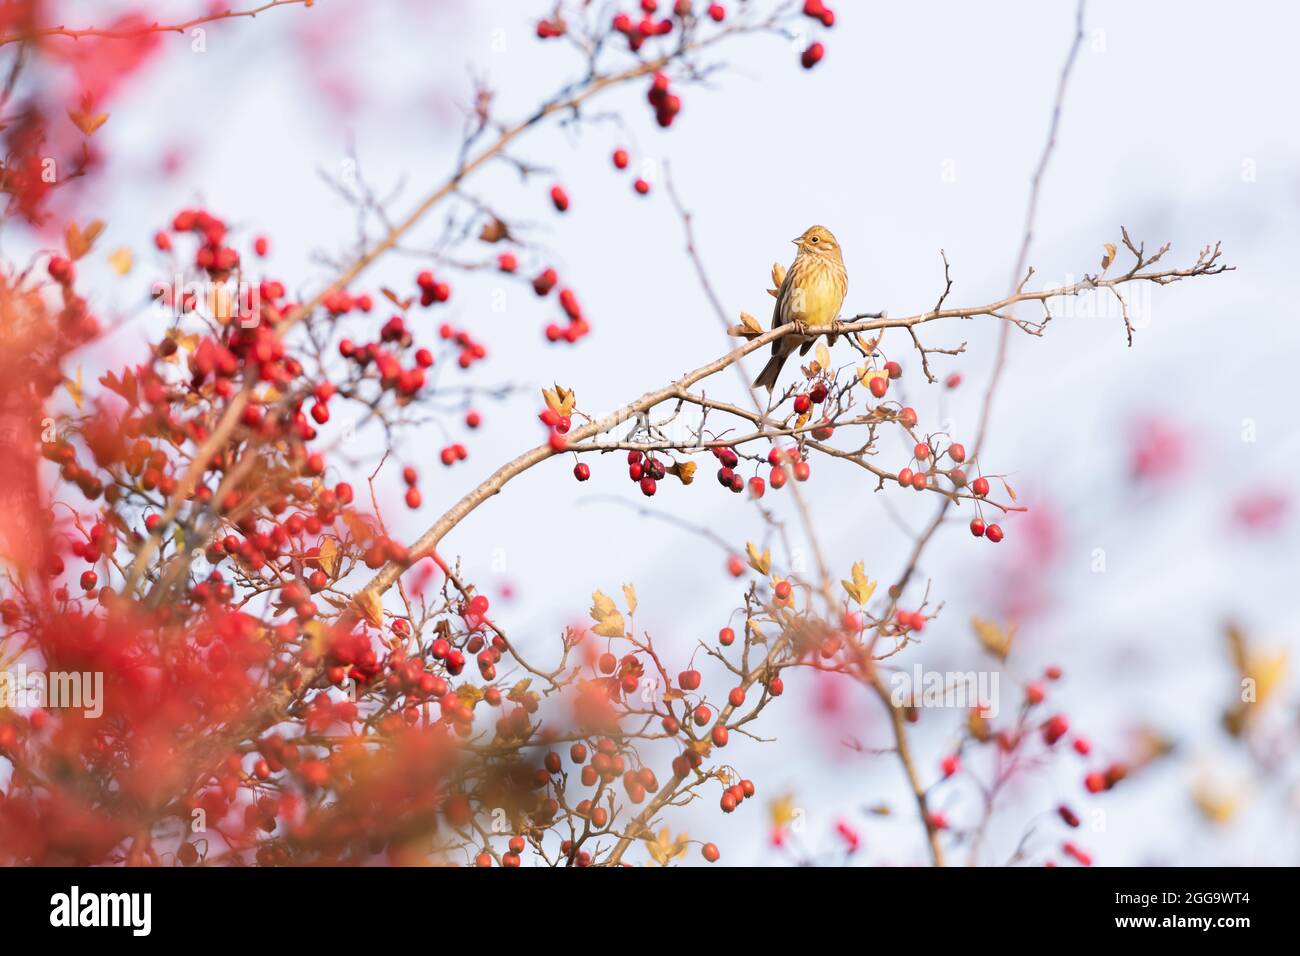 Oiseau jaune mangeant des baies sur la brousse rouge en automne. Photographie d'oiseaux Banque D'Images